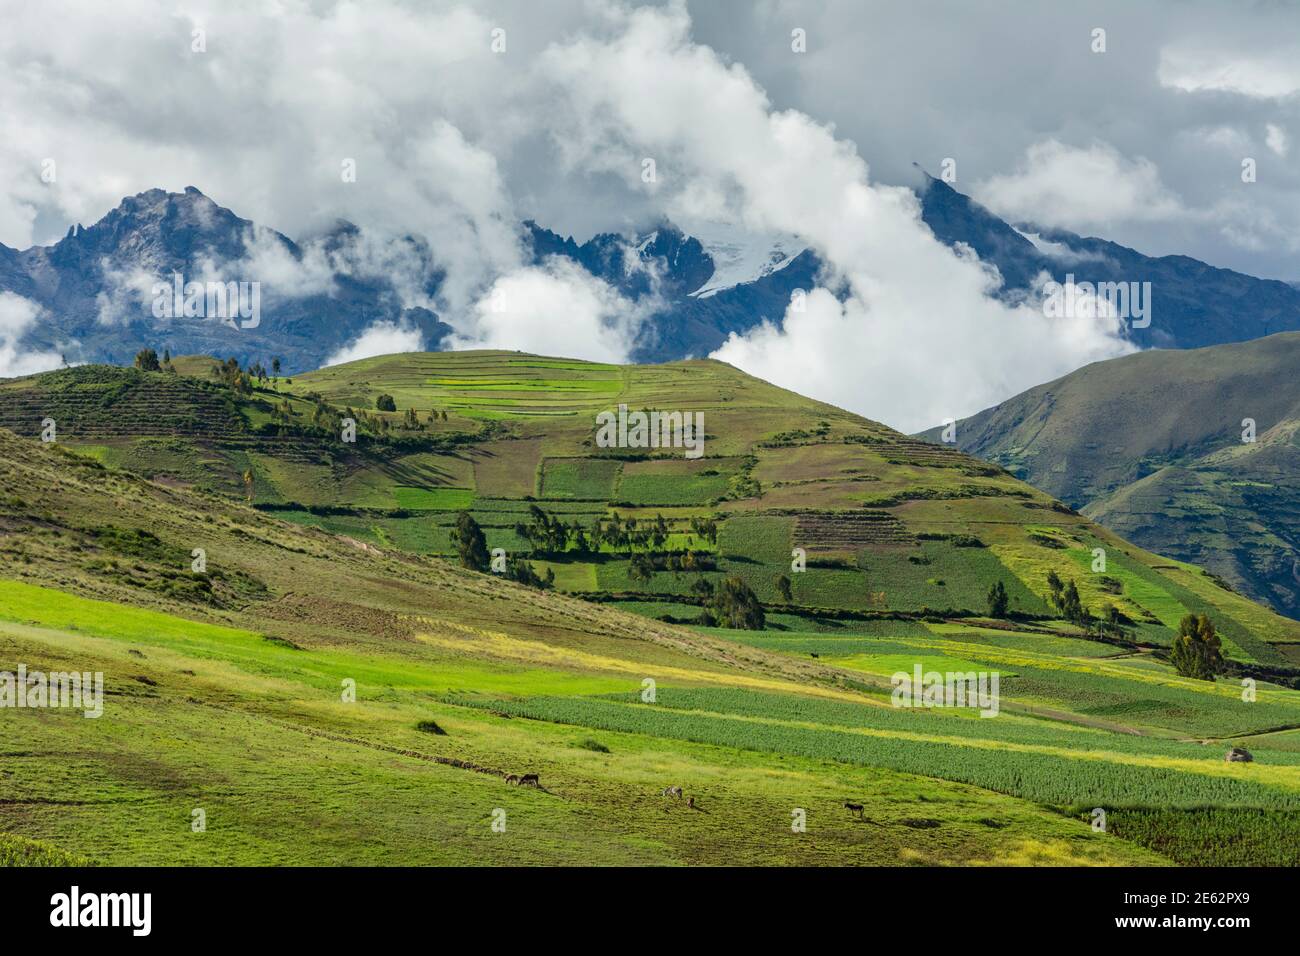 Les champs agricoles autour du village de Moray et des Andes s'élevant au-dessus de la Vallée Sacrée, Pérou. Banque D'Images